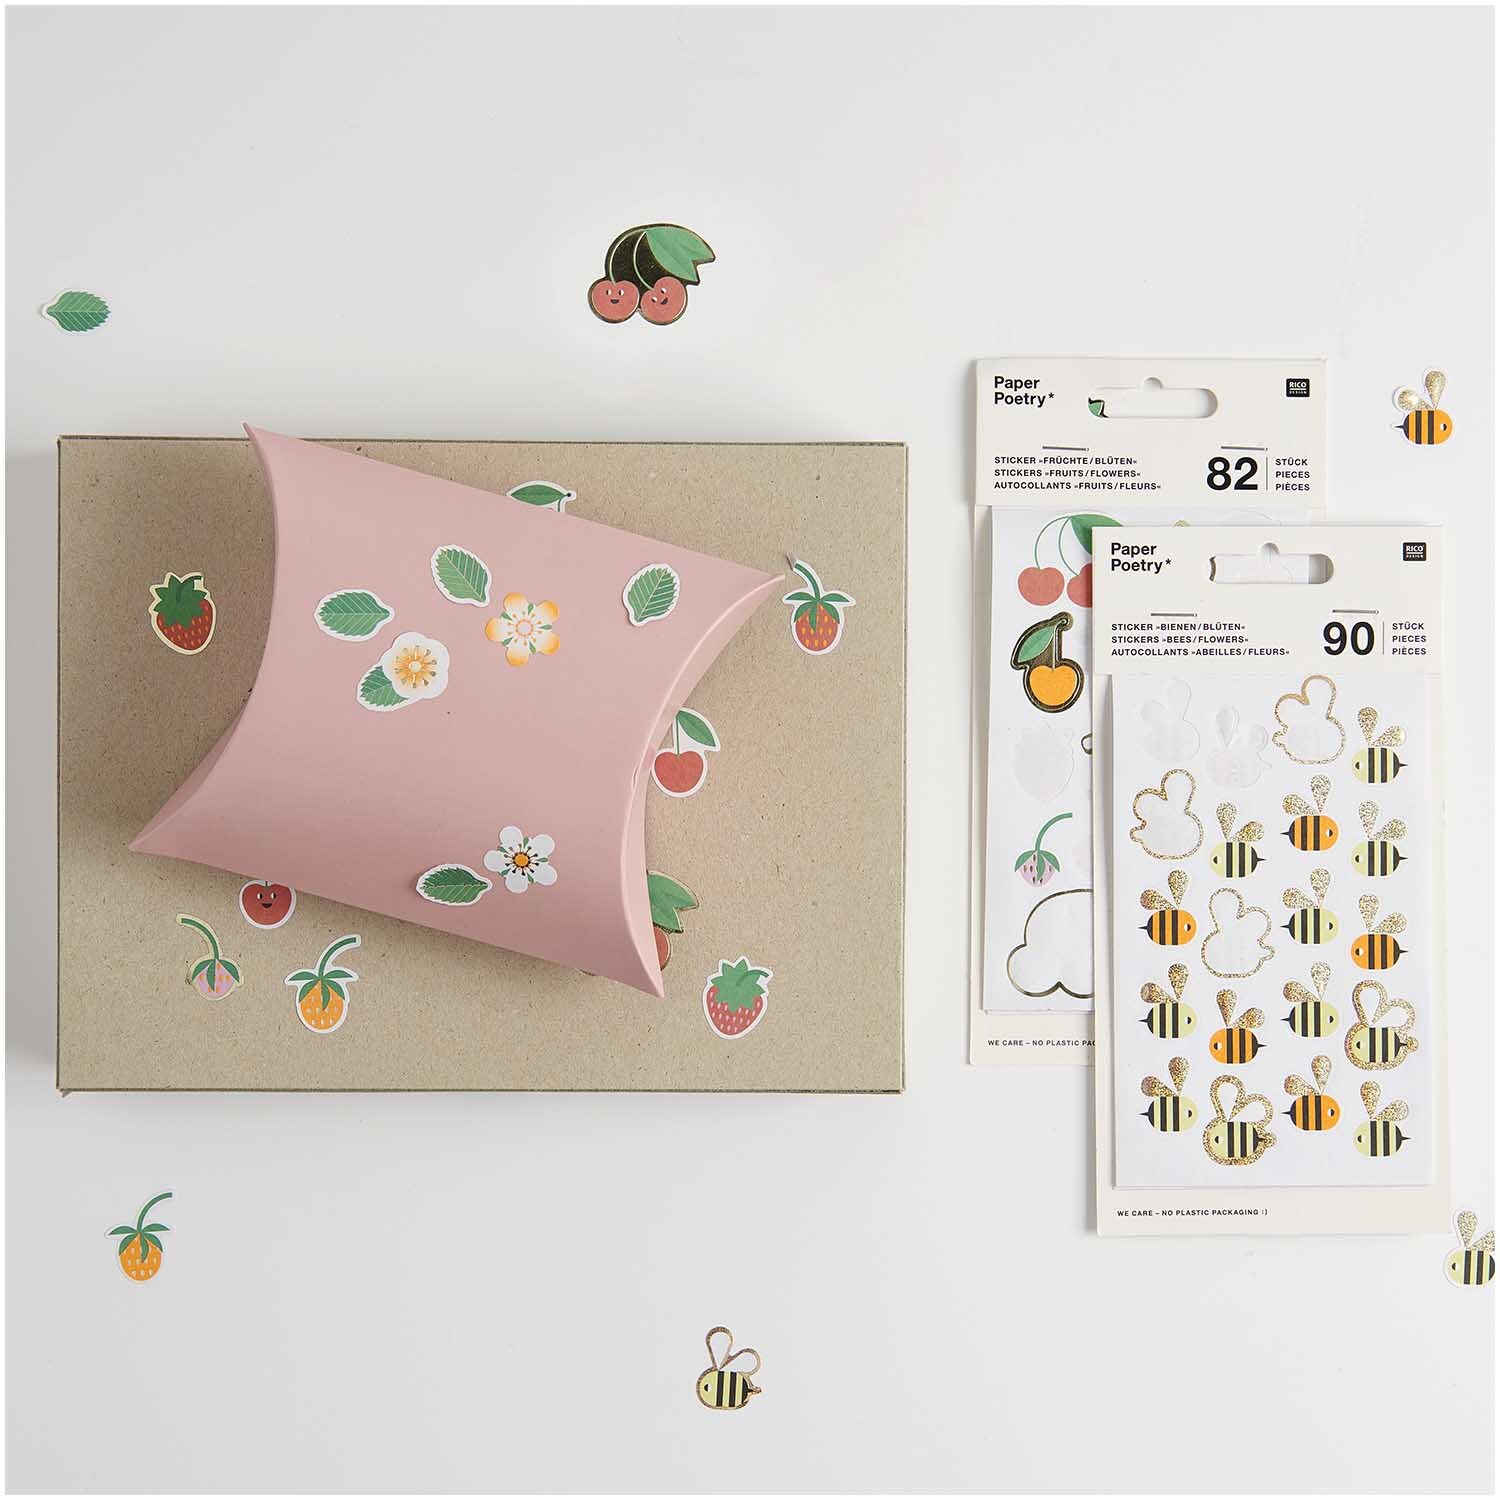 Paper Poetry Sticker Bienen & Blüten 4 Blatt